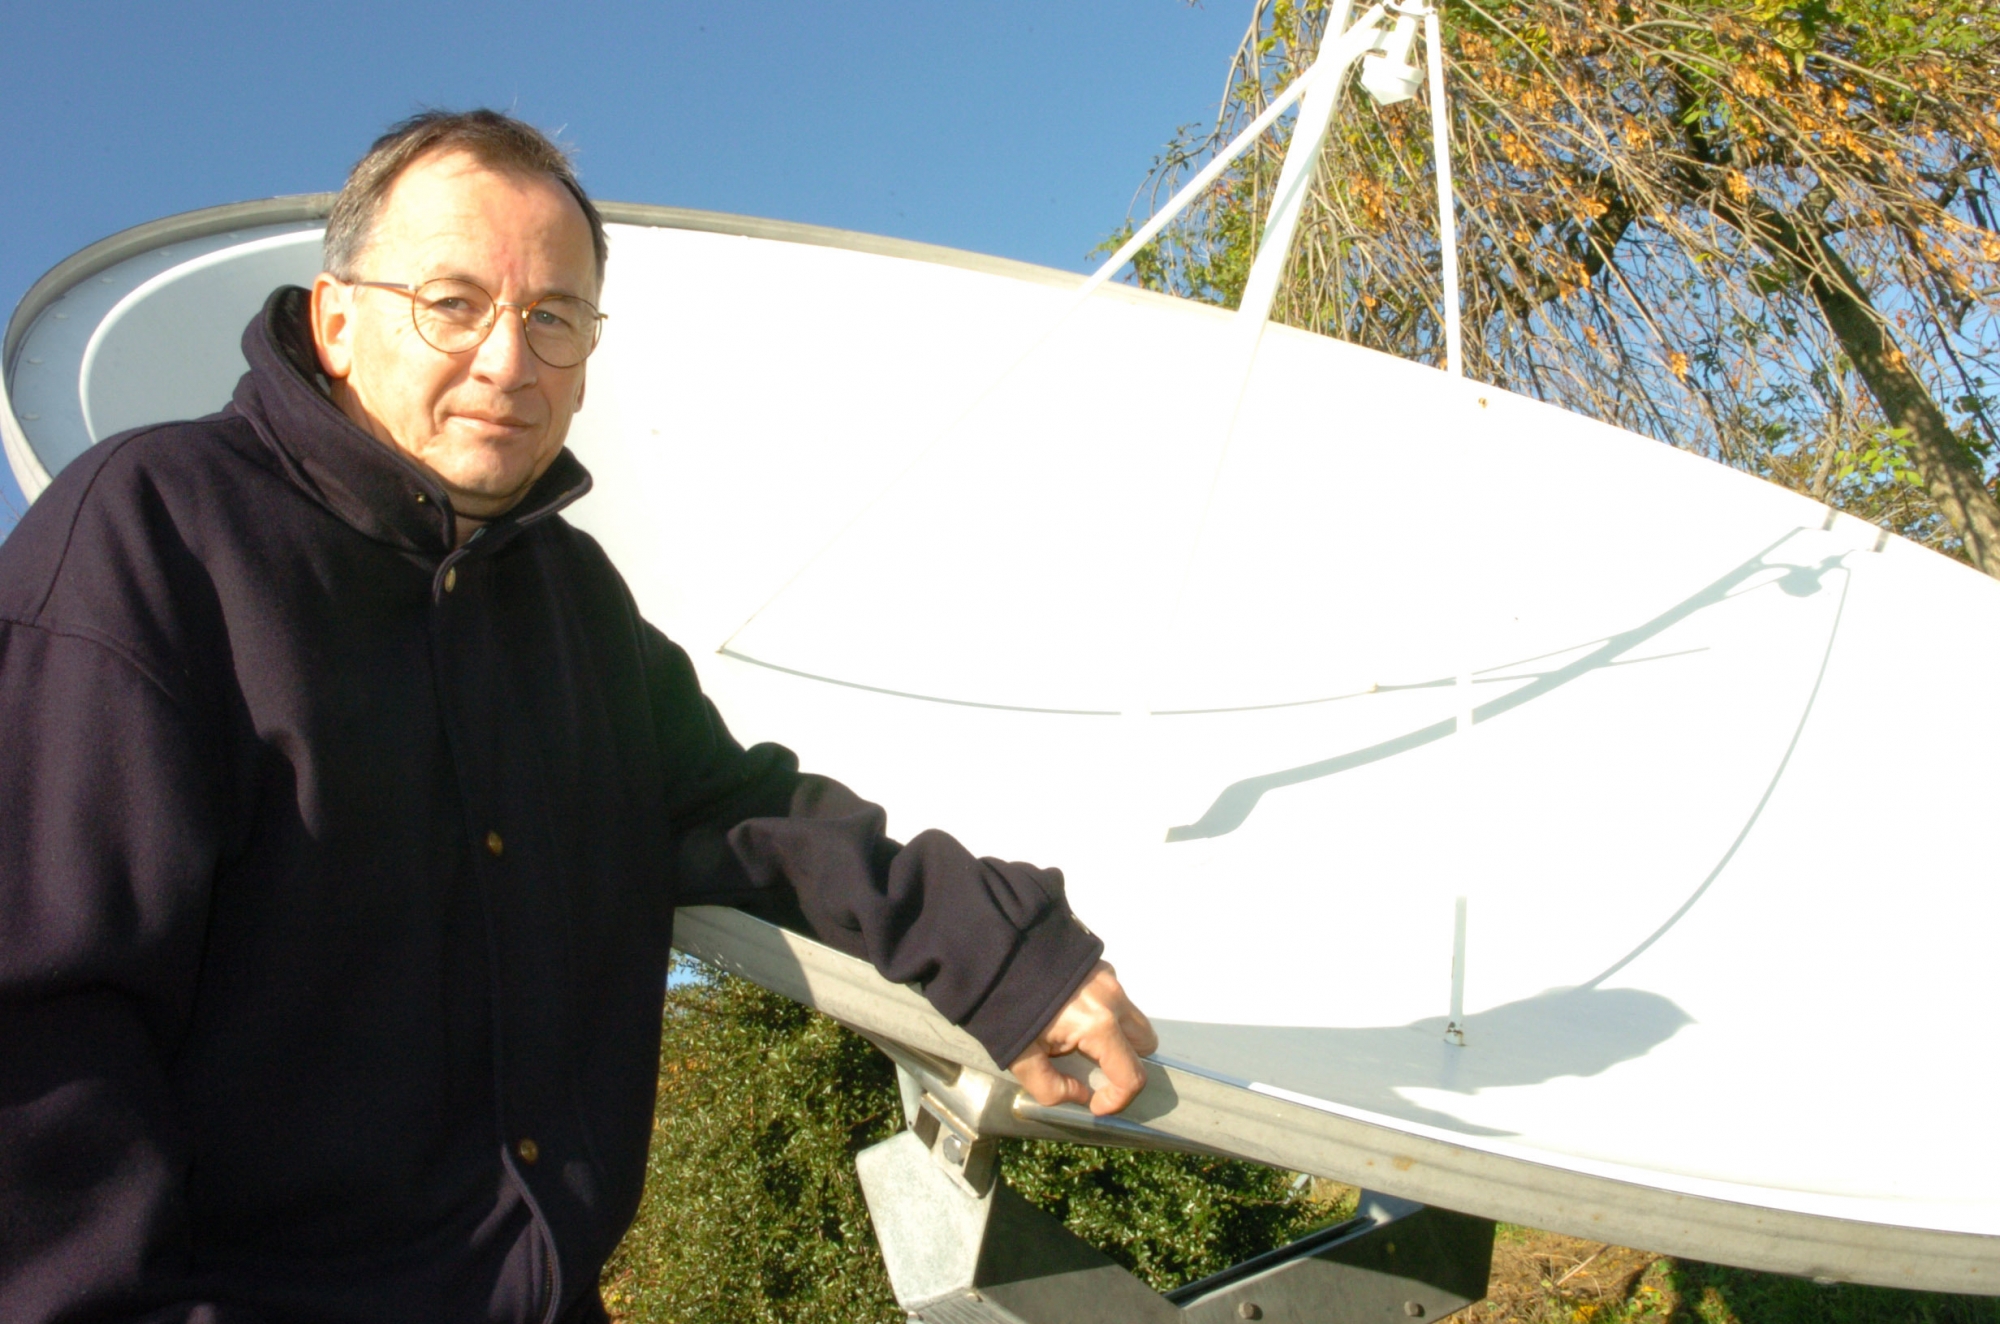 Michel Burnand se consacrera à sa passion pour les télécommunications. Ici près de sa parabole installée à Vich, il y a quelques années.